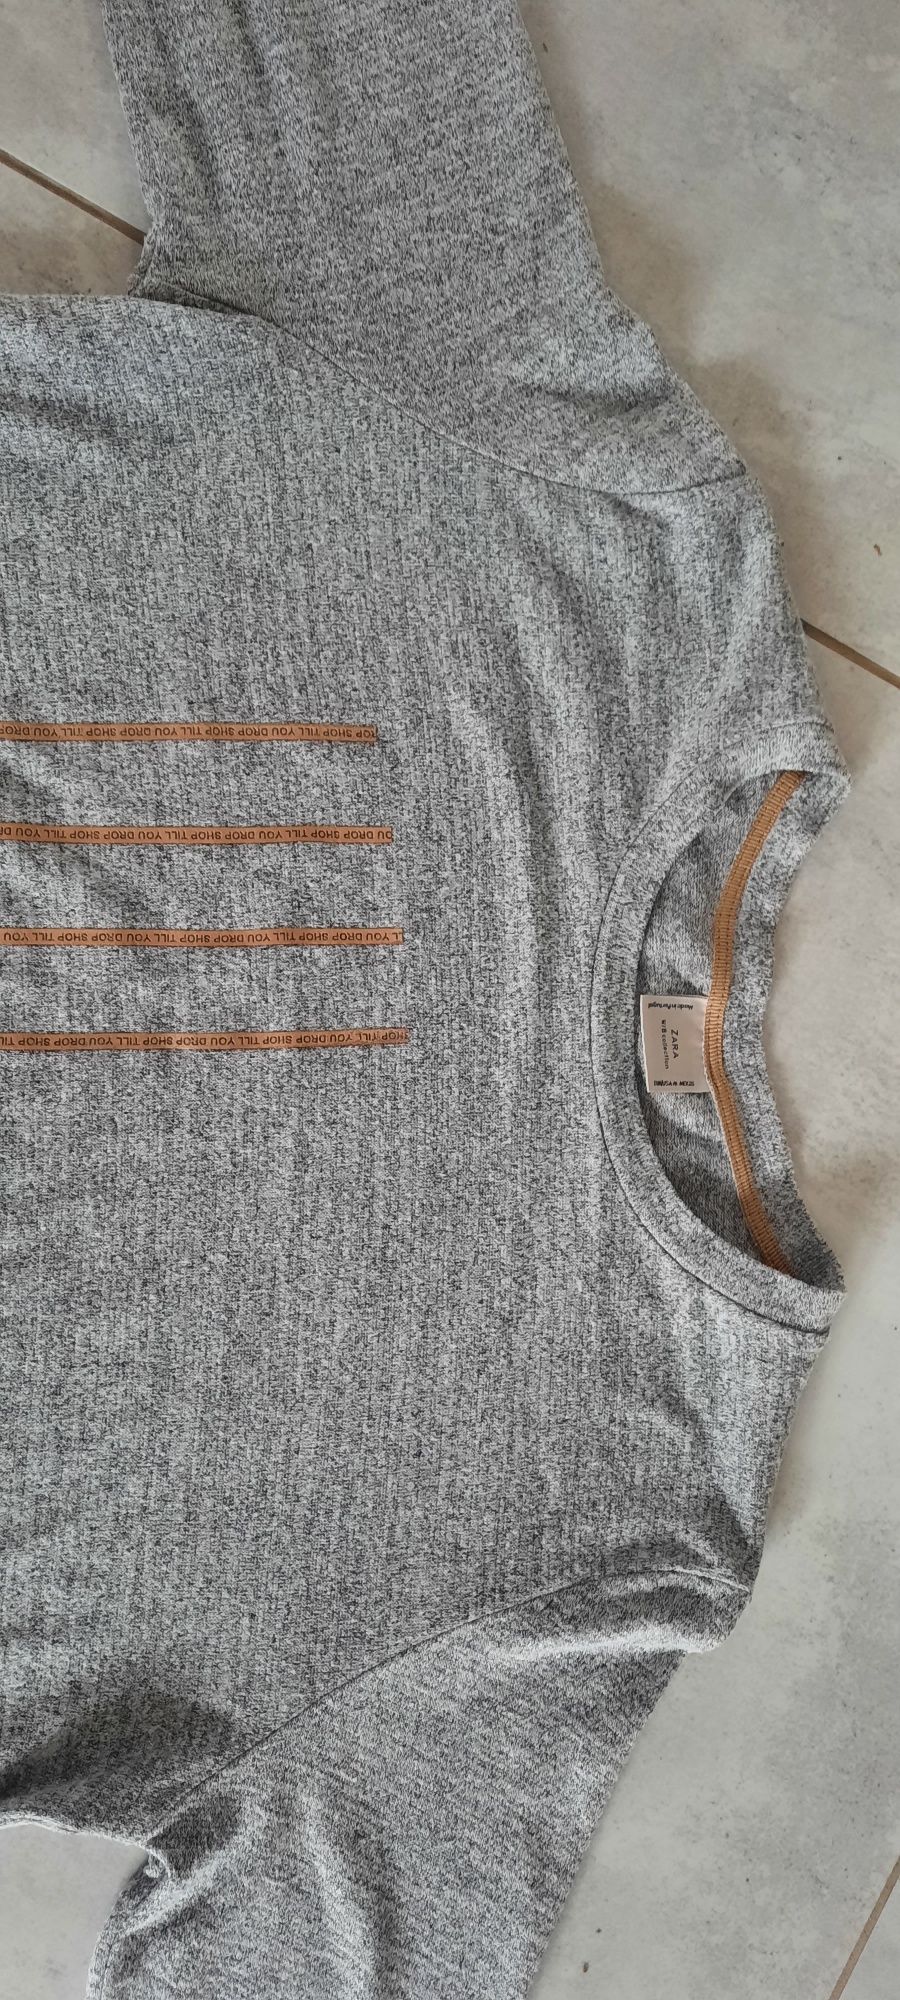 Koszulka cienki sweterek szary z dłuższym tyłem rozmiar M/38 Zara